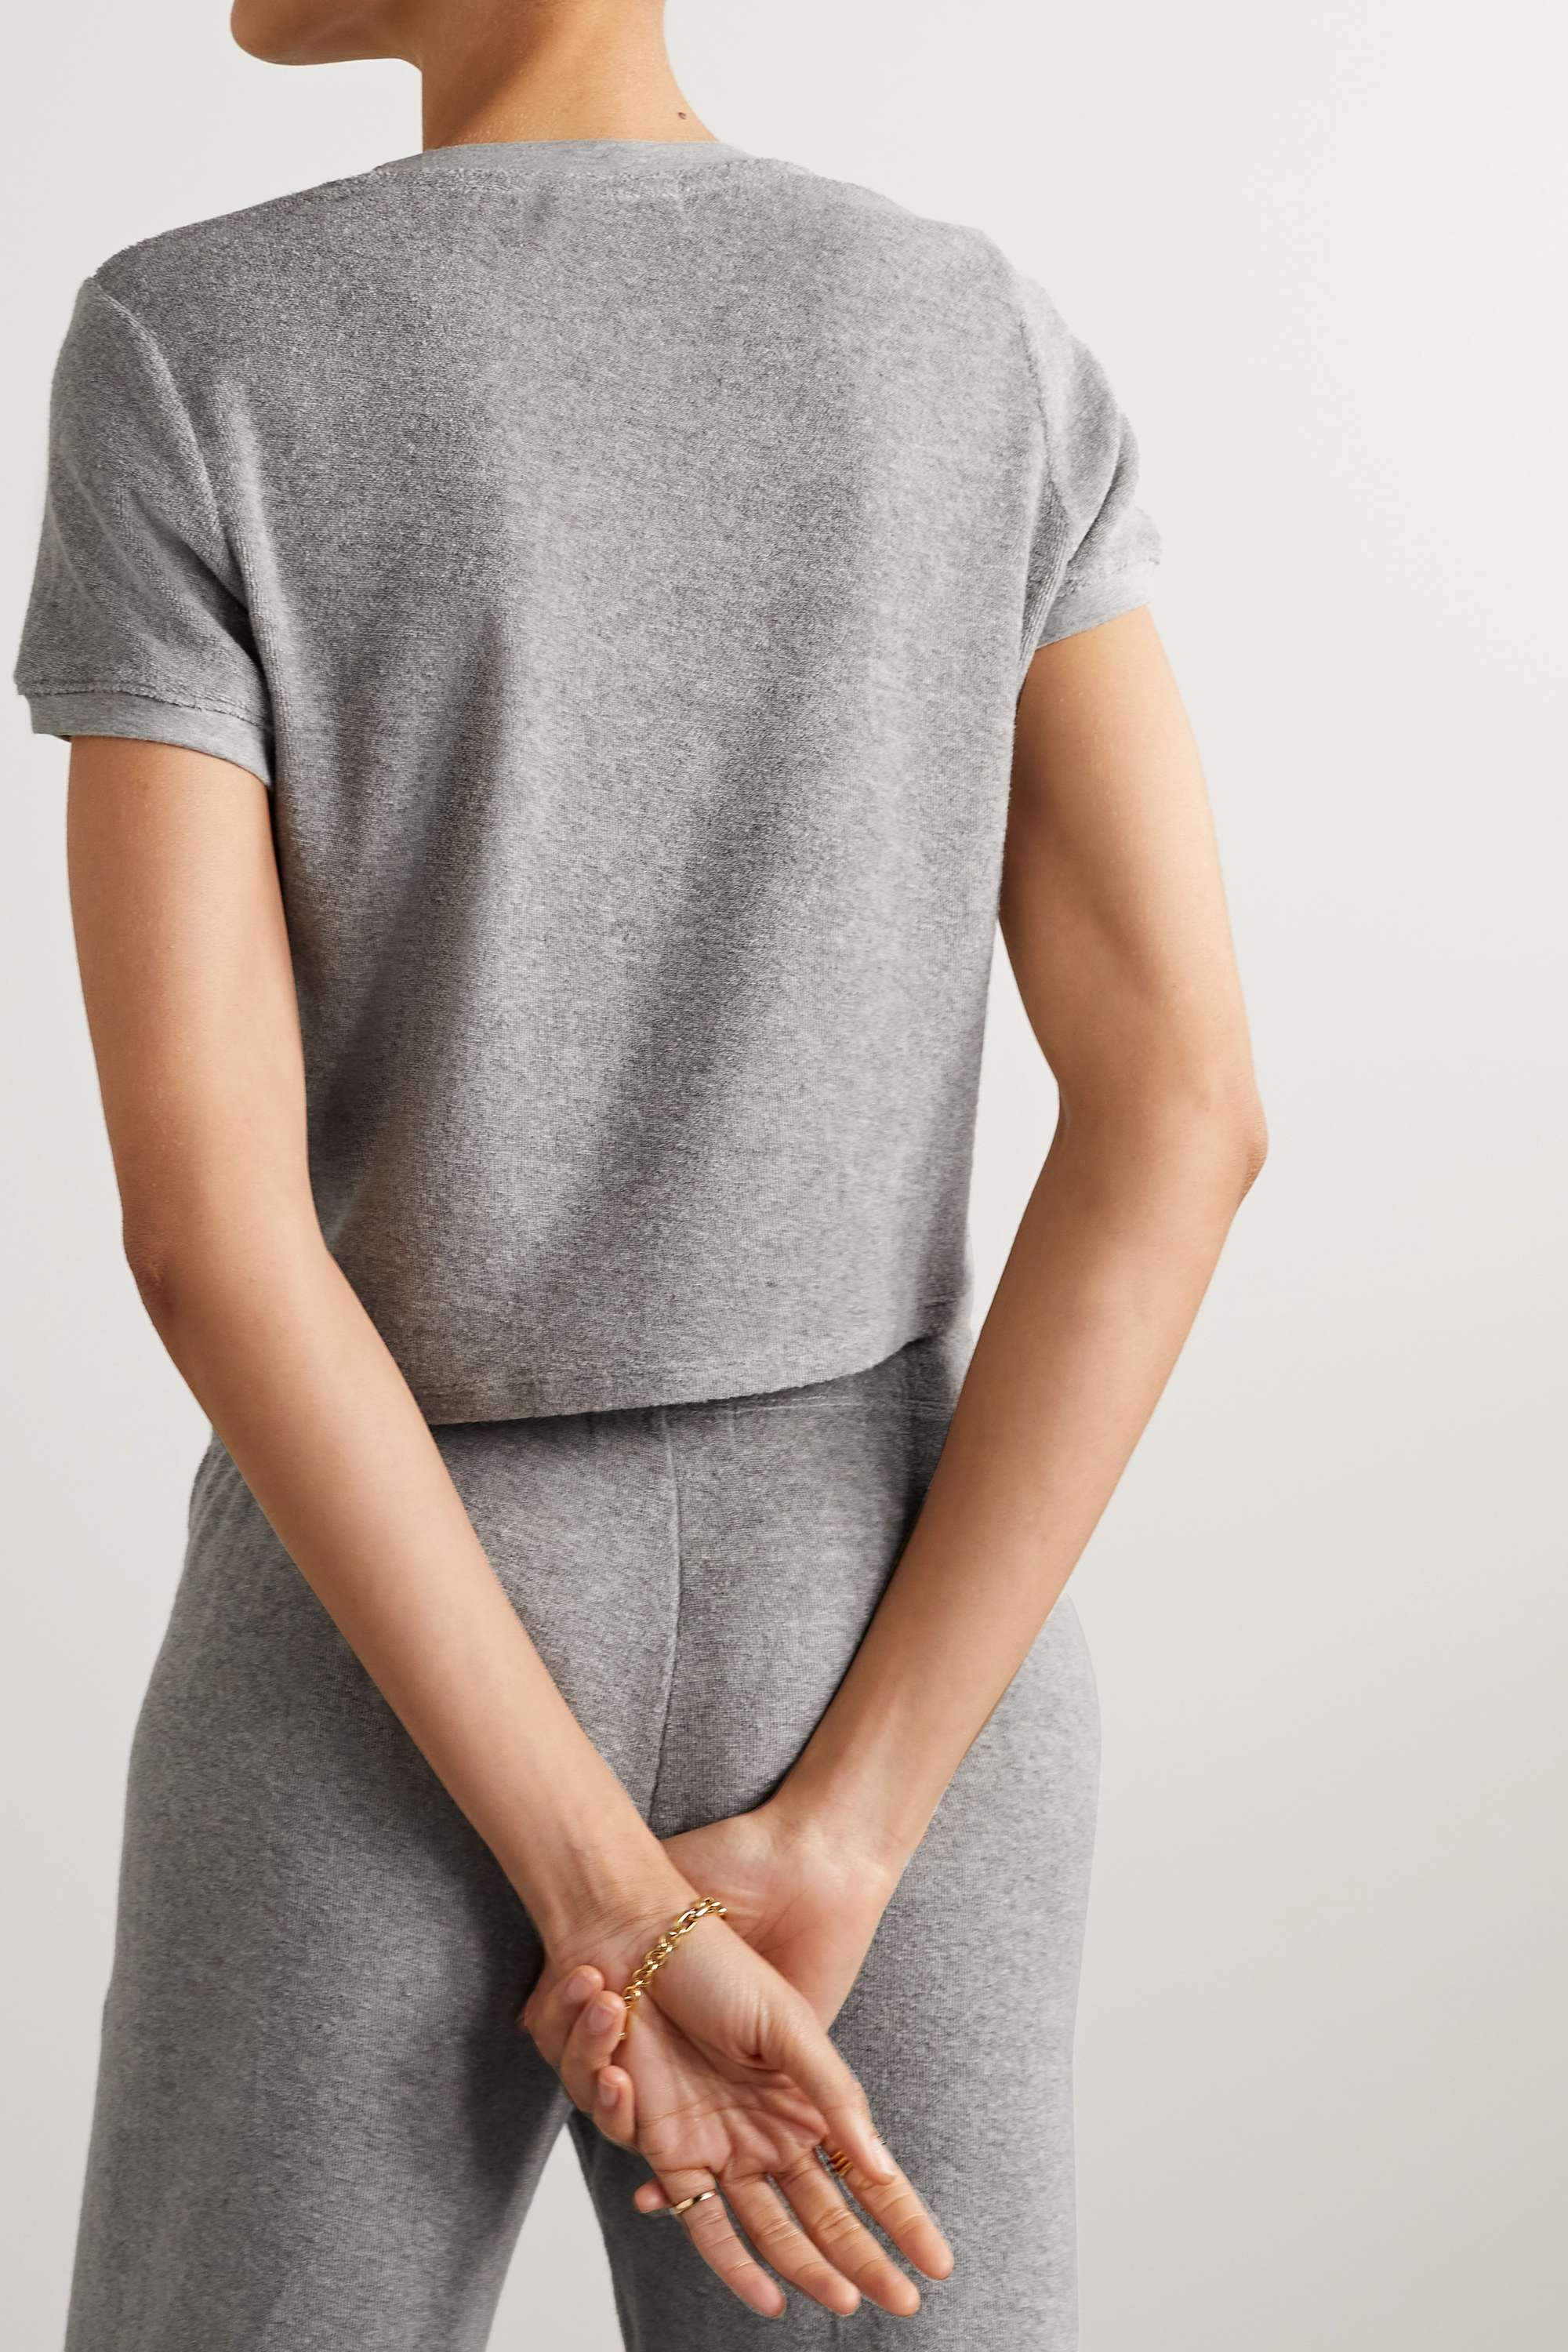 SUZIE KONDI Капри футболка из хлопковой махровой ткани, серый конди э атлантия